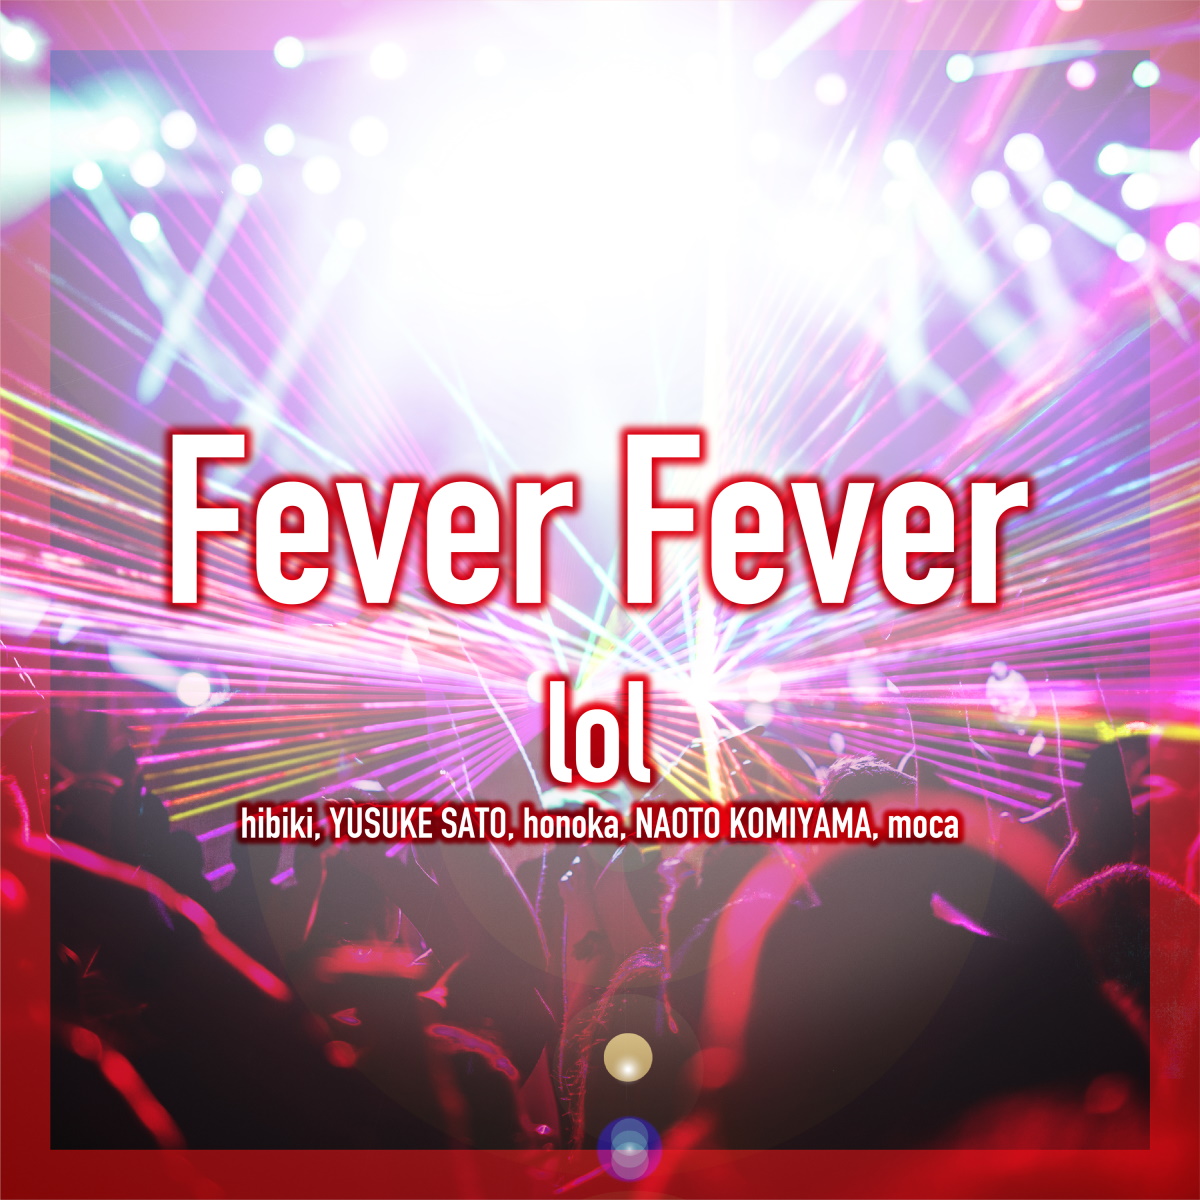 『lol-エルオーエル- - Fever Fever』収録の『Fever Fever』ジャケット